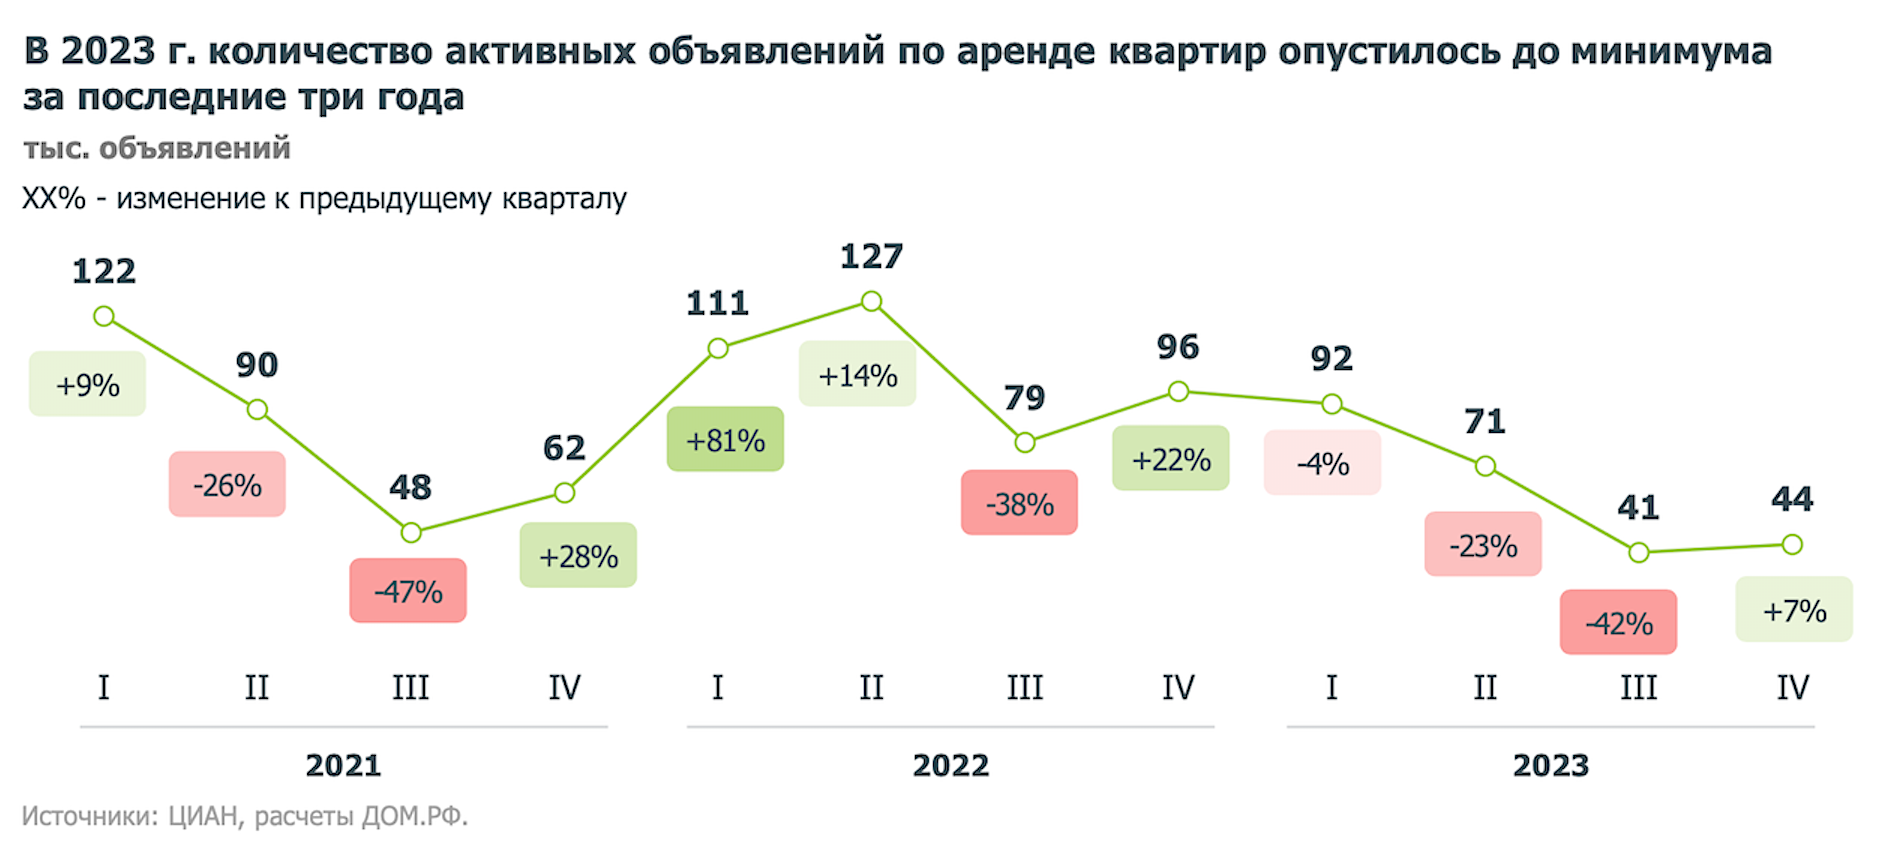 Число активных объявлений по аренде квартир в российских городах резко сократилось по состоянию на 1 января 2024 года составило 44 тыс., что почти в 1,5-2 раза ниже уровня трех предыдущих лет.